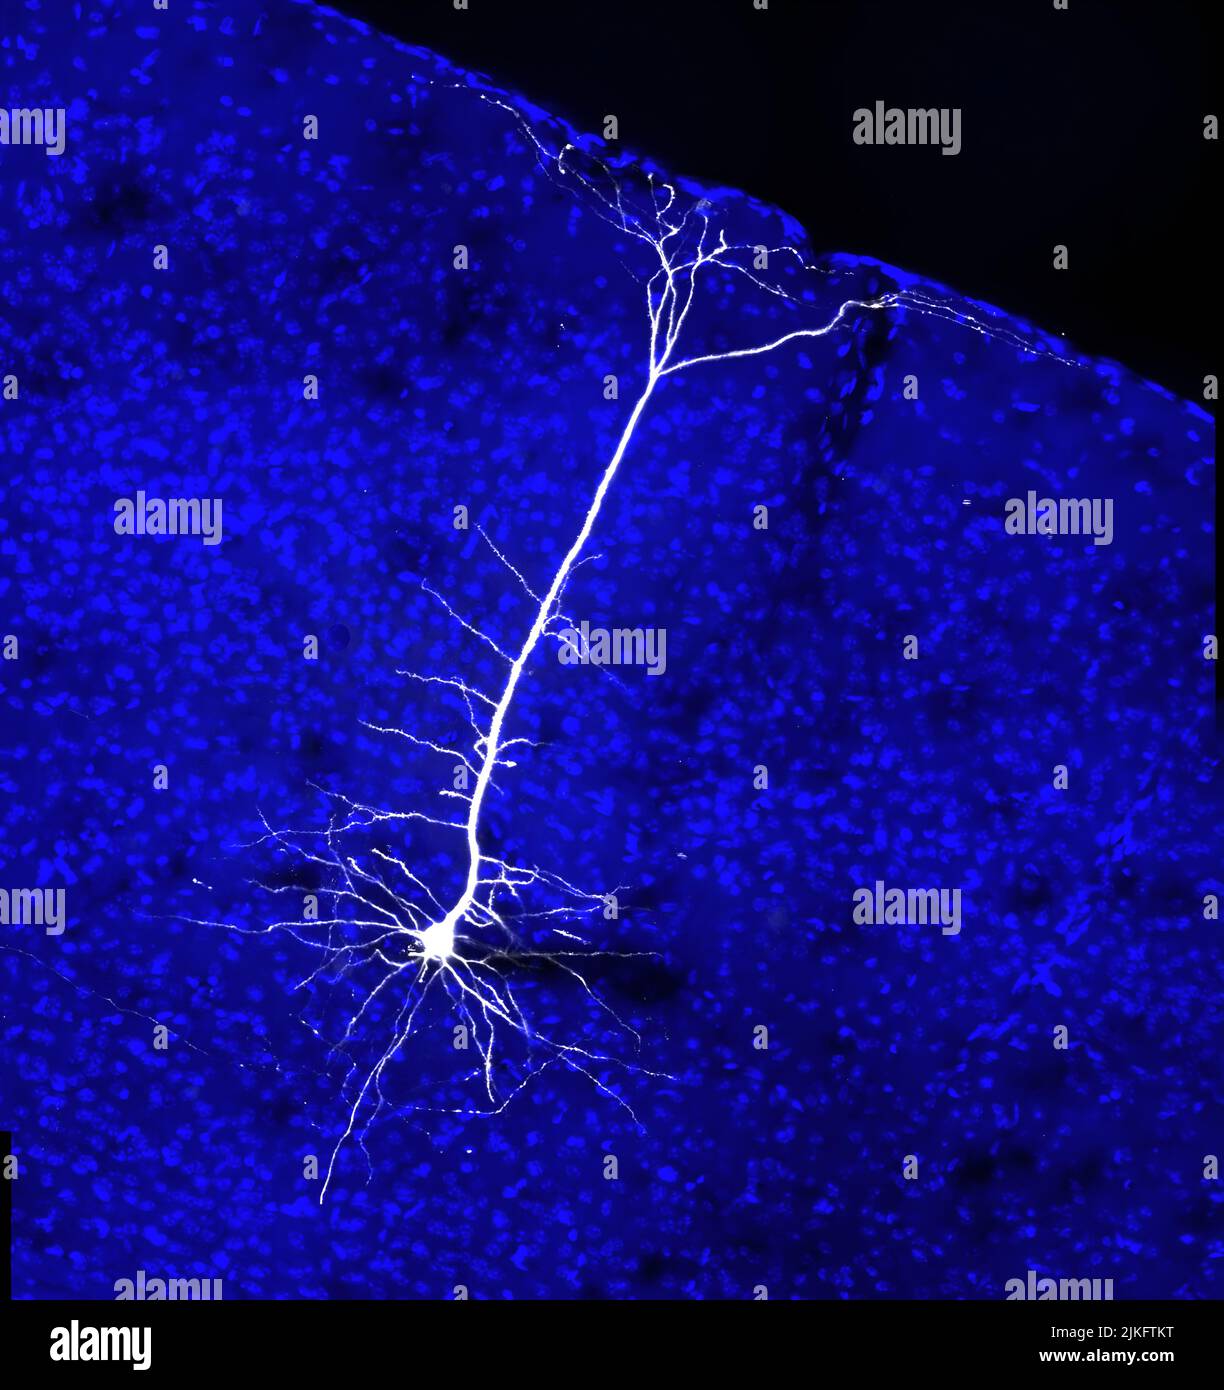 Es ist bekannt, dass sich Projektionen von Neuronen aus dem visuellen Kortex auf Zellen im Hirnstamm erstrecken, die angeborene Motoren regulieren. Dieses Bild zeigt eine neurale Projektion des visuellen Kortex einer Maus. Stockfoto